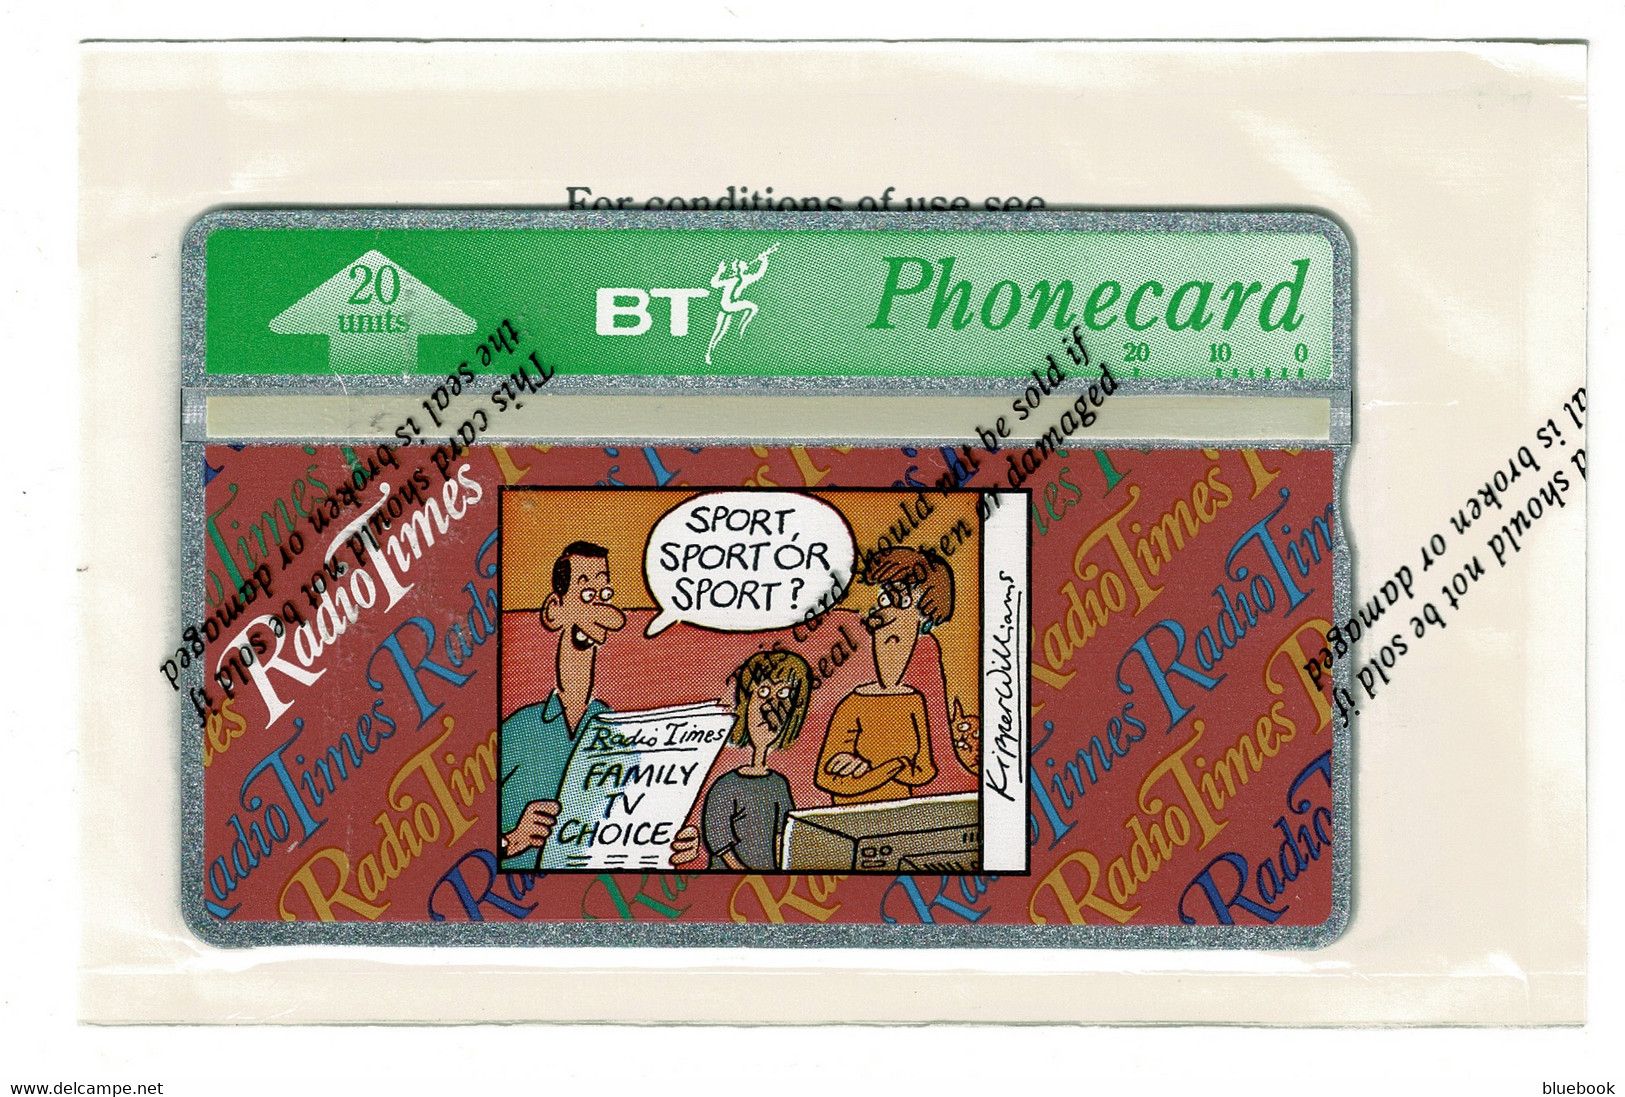 Ref 1567 - £2 - Radio Times BT Phonecard In Original Unopened Package = Phone Card - Werbung